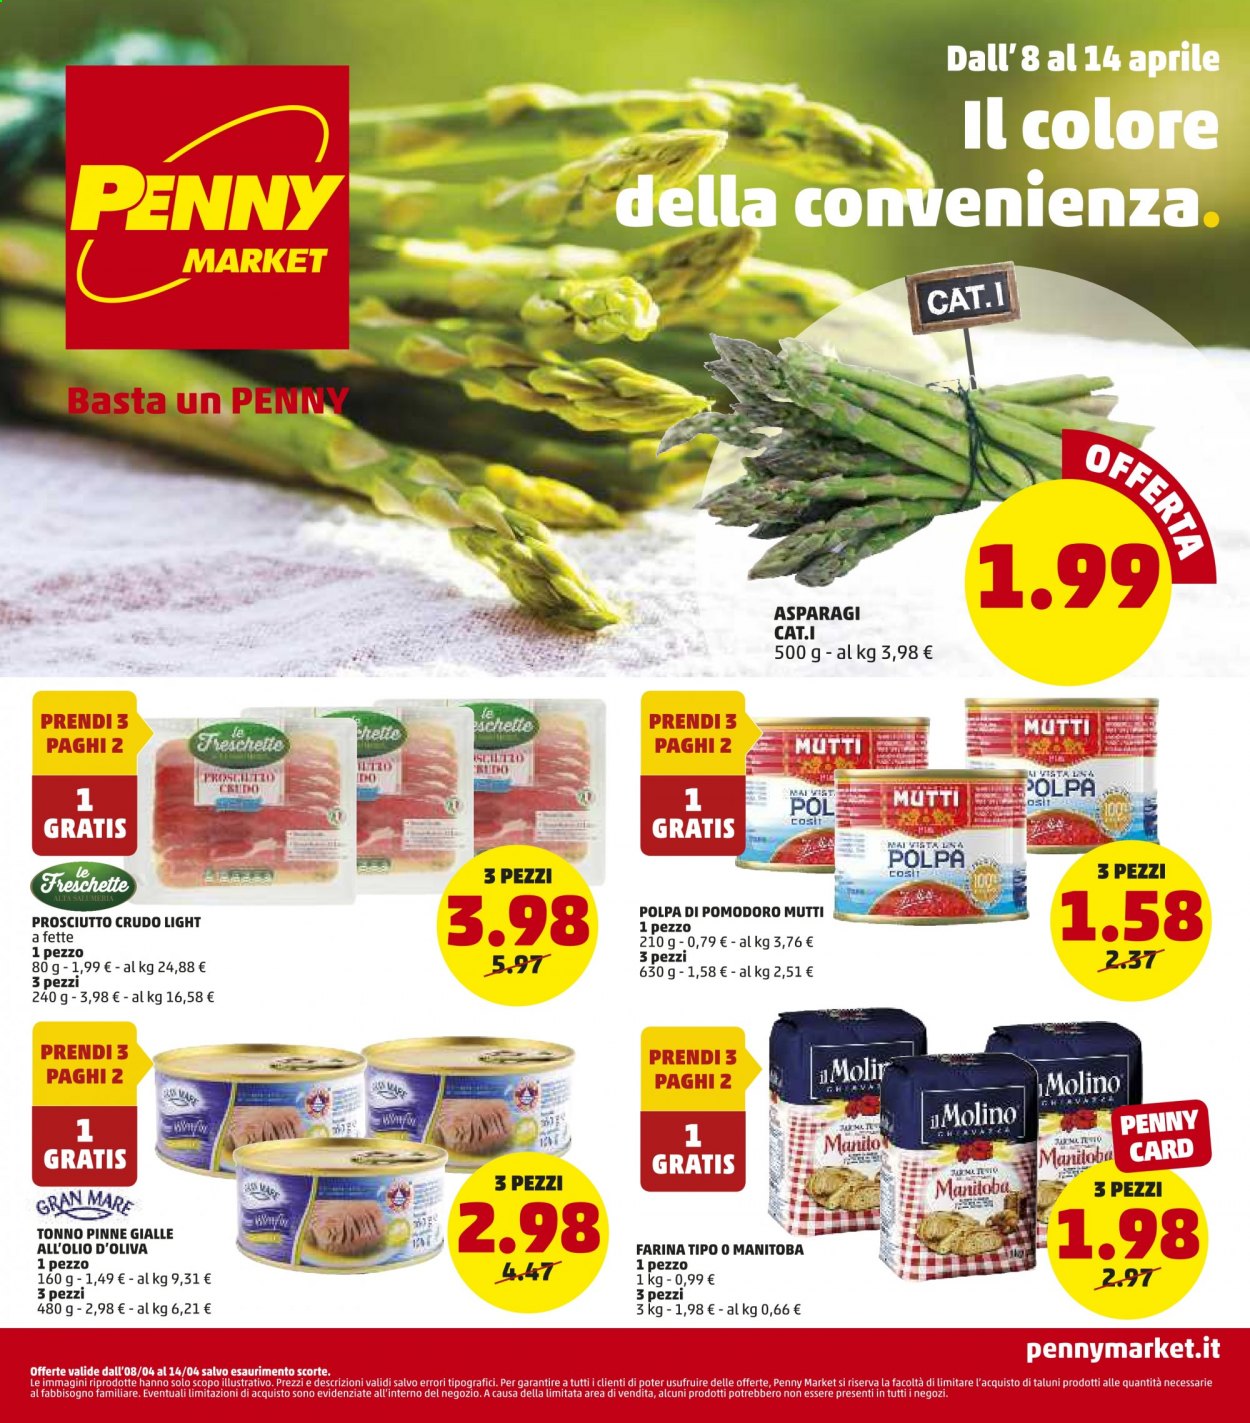 thumbnail - Volantino Penny Market - 8/4/2021 - 14/4/2021 - Prodotti in offerta - asparagi, tonno, prosciutto, prosciutto crudo, farina, farina tipo manitoba, Mutti, polpa di pomodoro. Pagina 1.